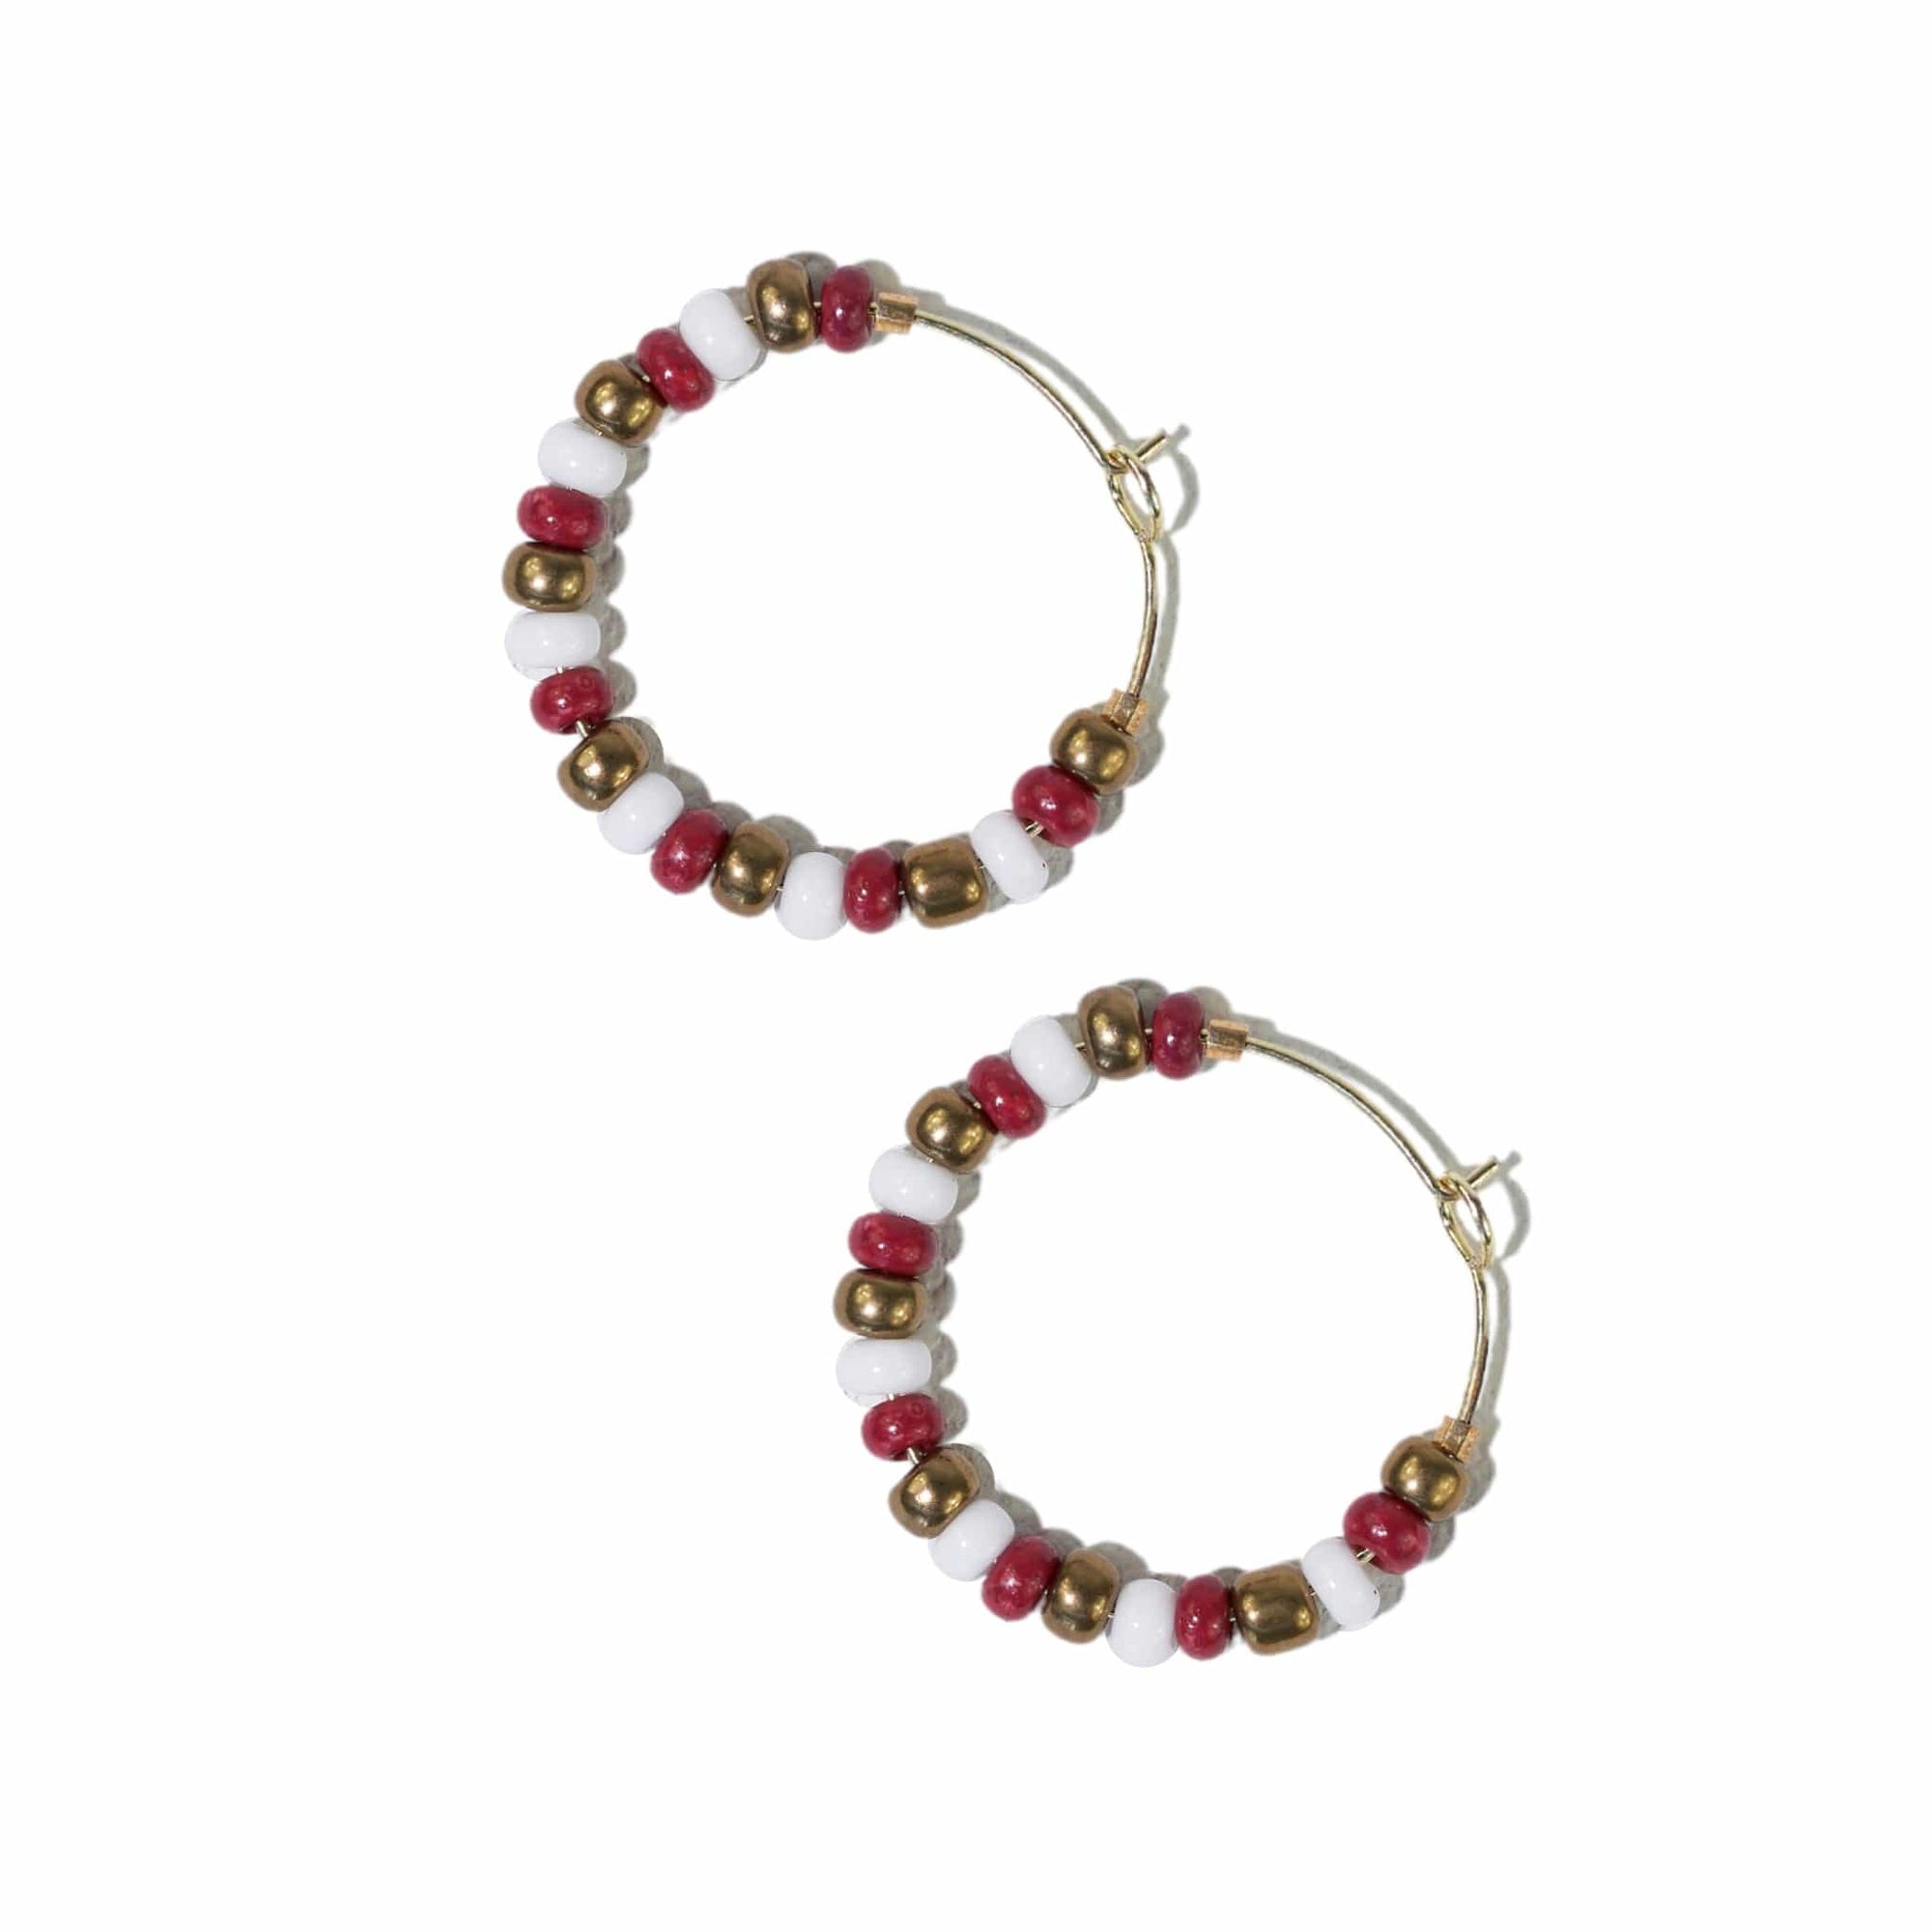 Victoria mixed seed bead hoop earrings gold + dark red